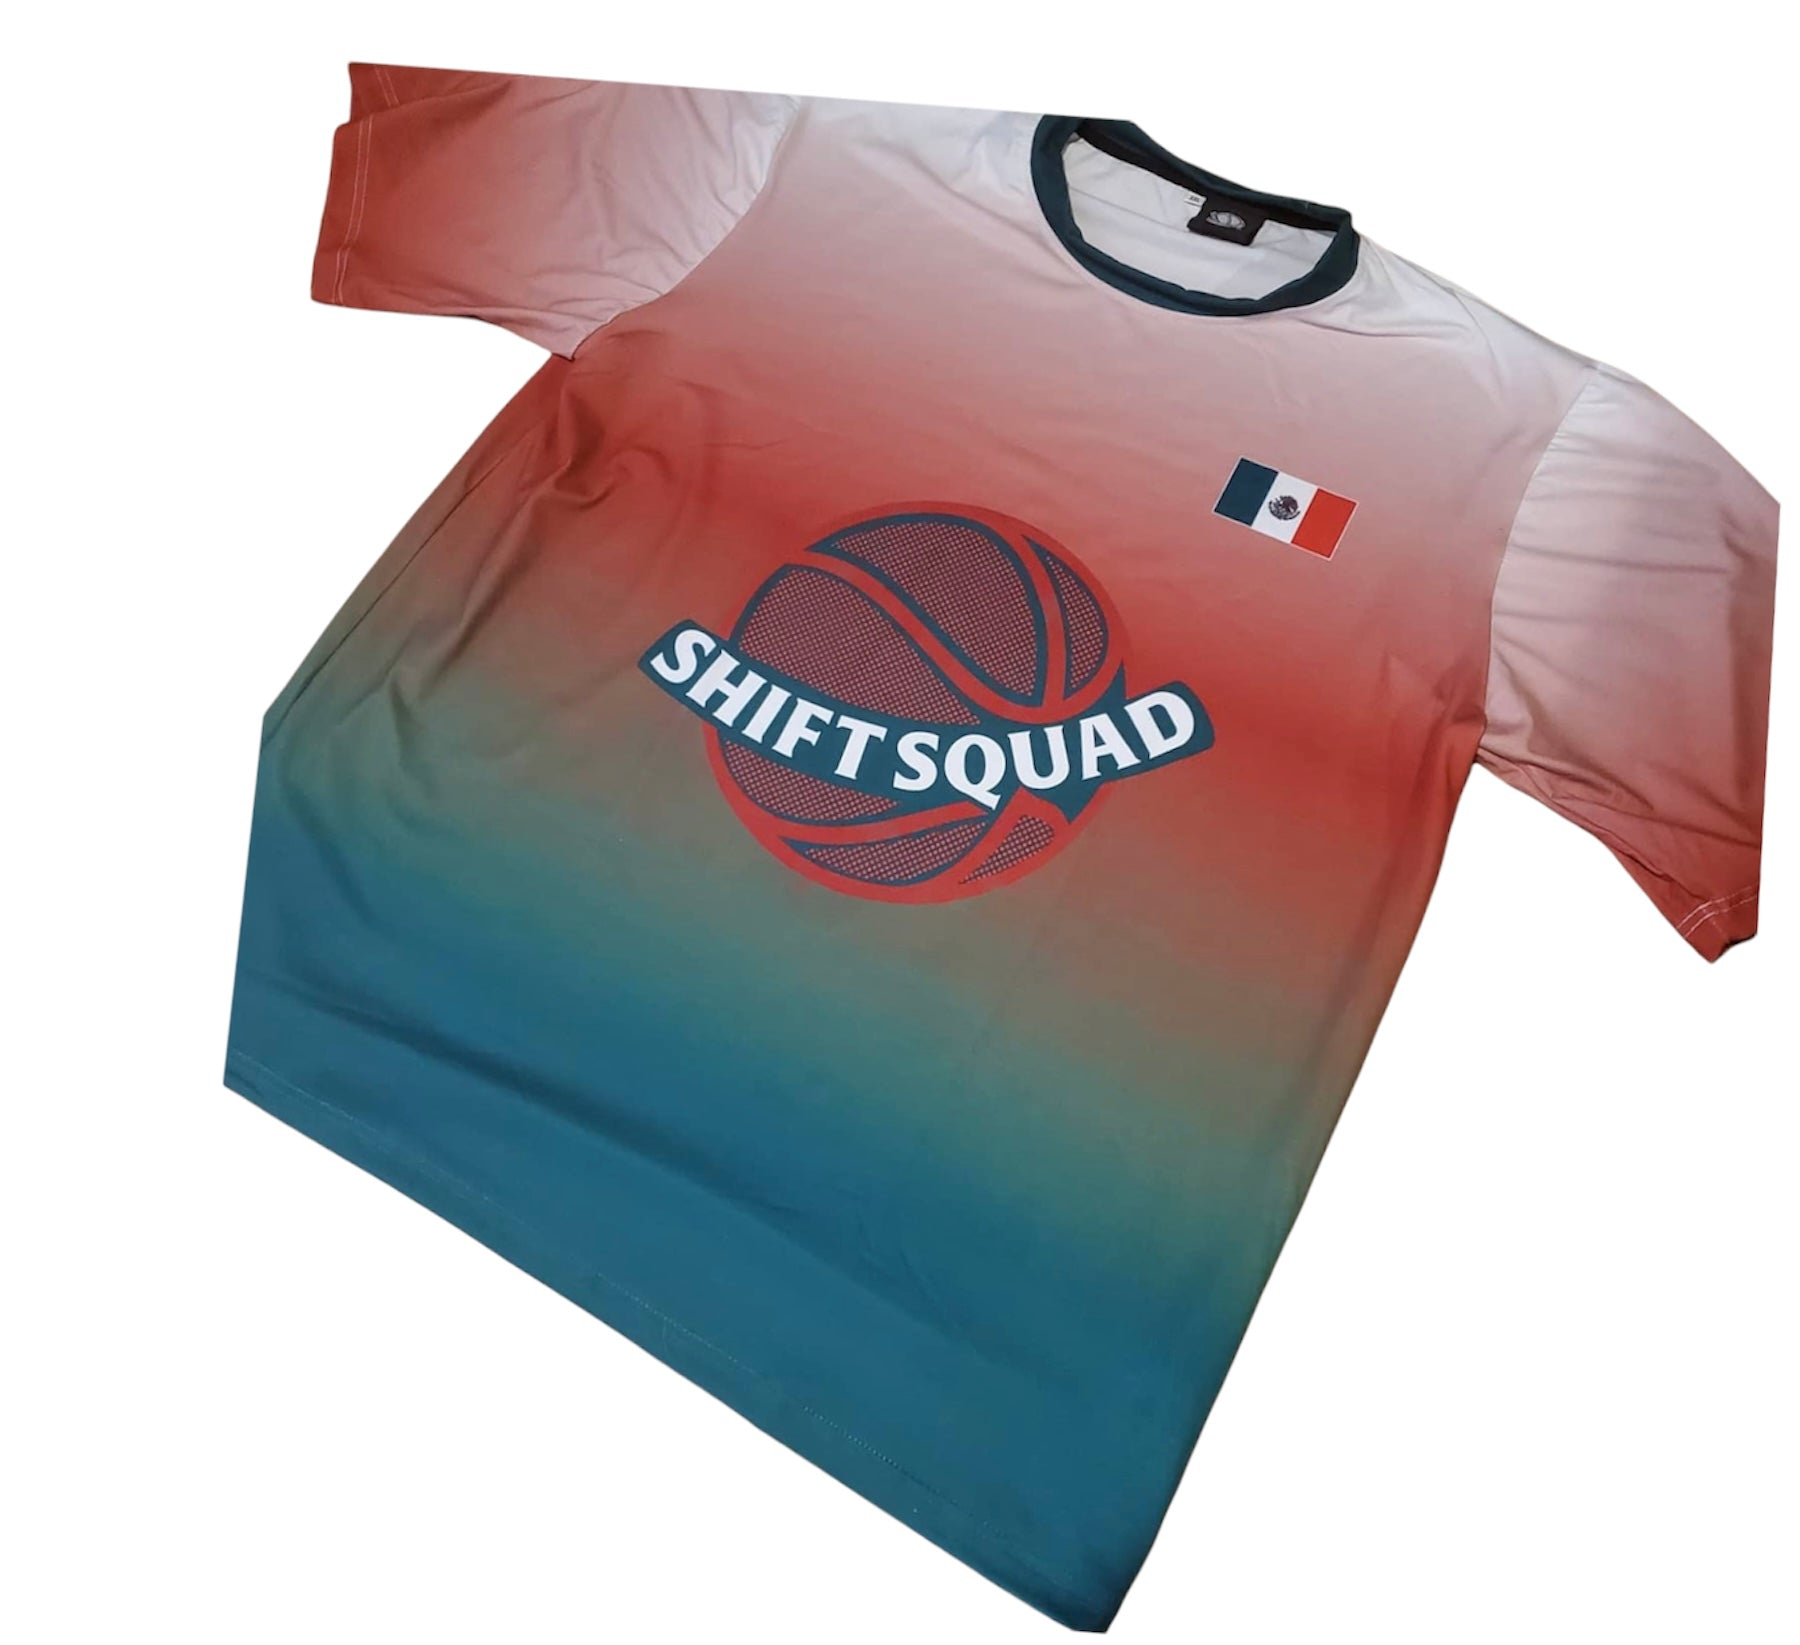 Customize t-shirts - Shiftsquad